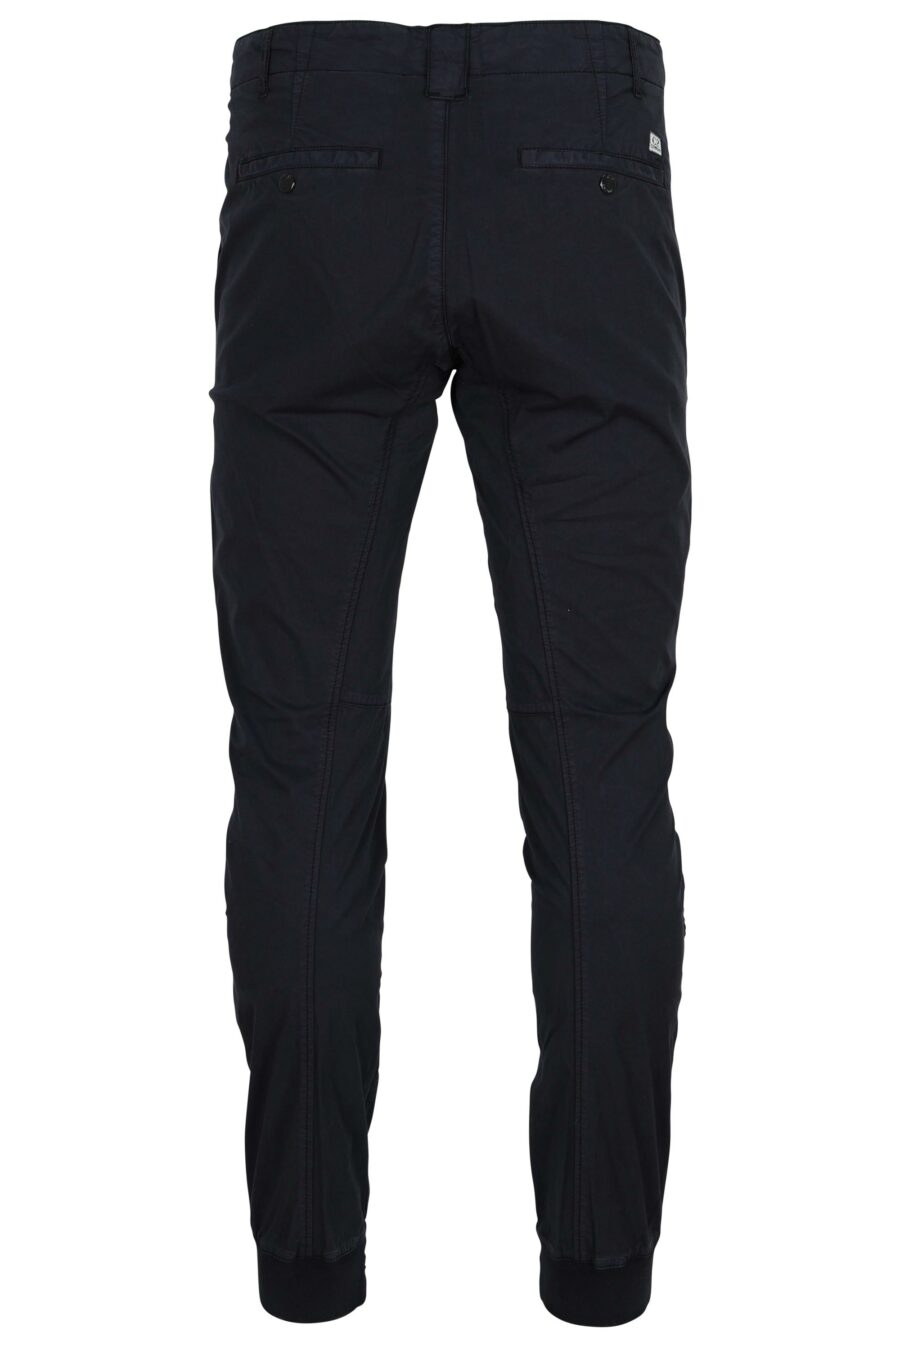 Pantalón azul oscuro ergonómico con minilogo - 7620943807011 1